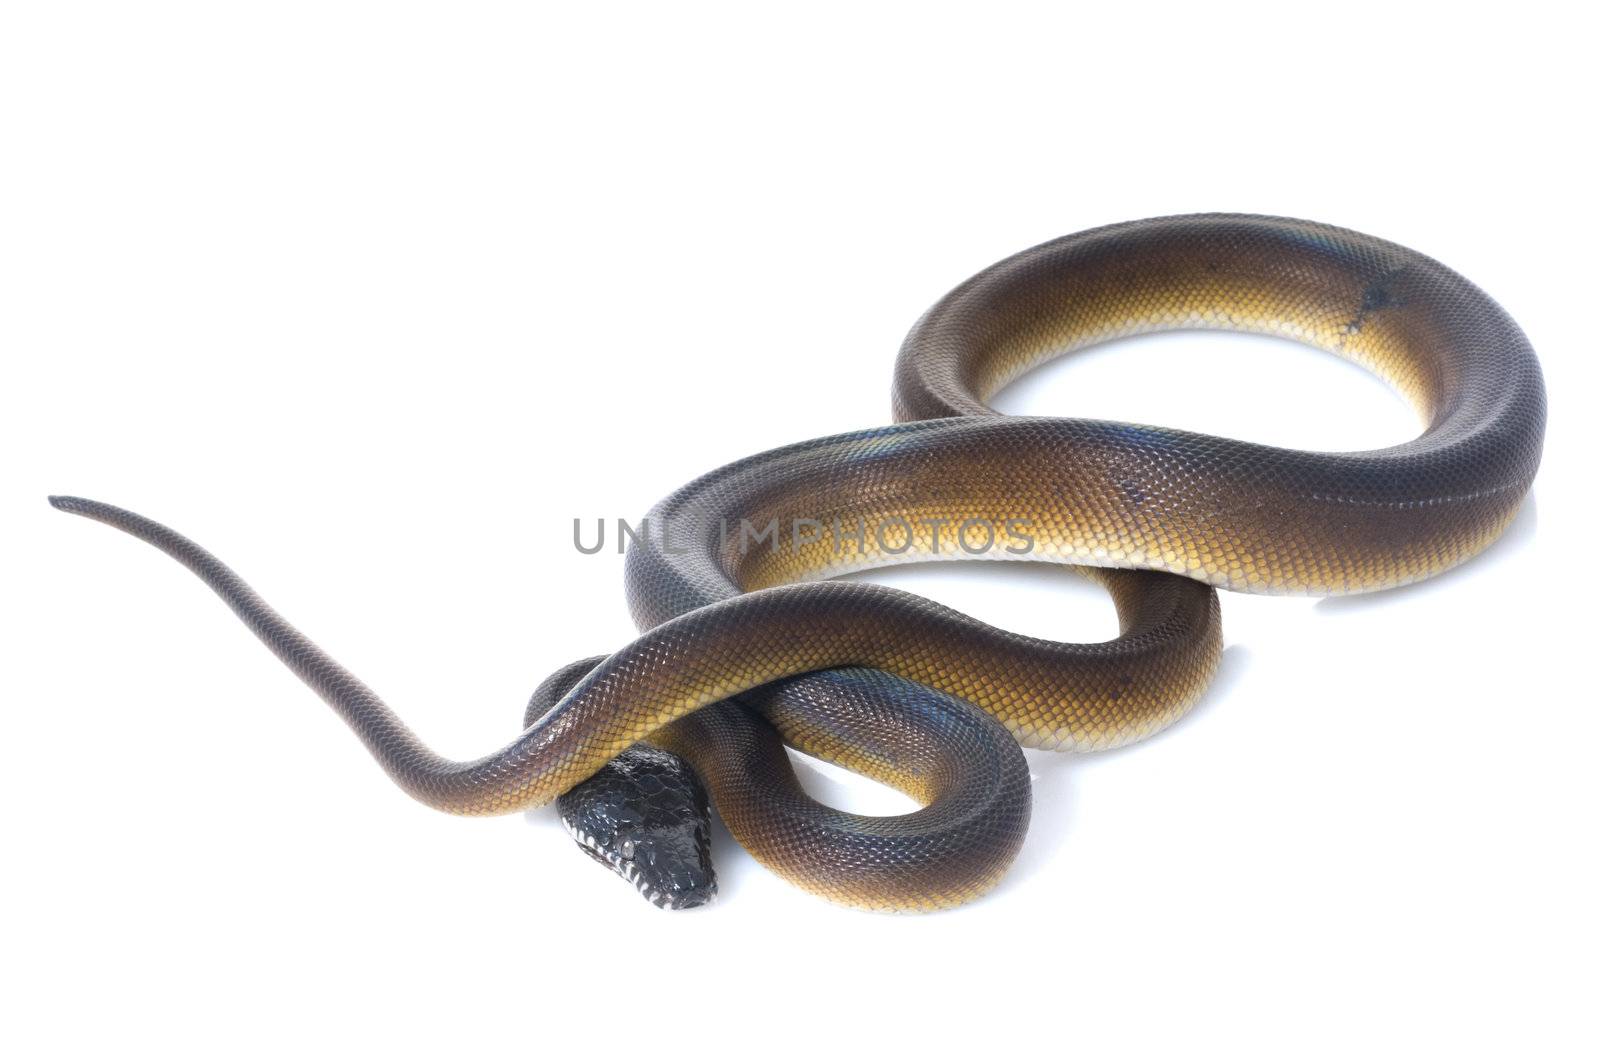 White Lipped Python by Njean